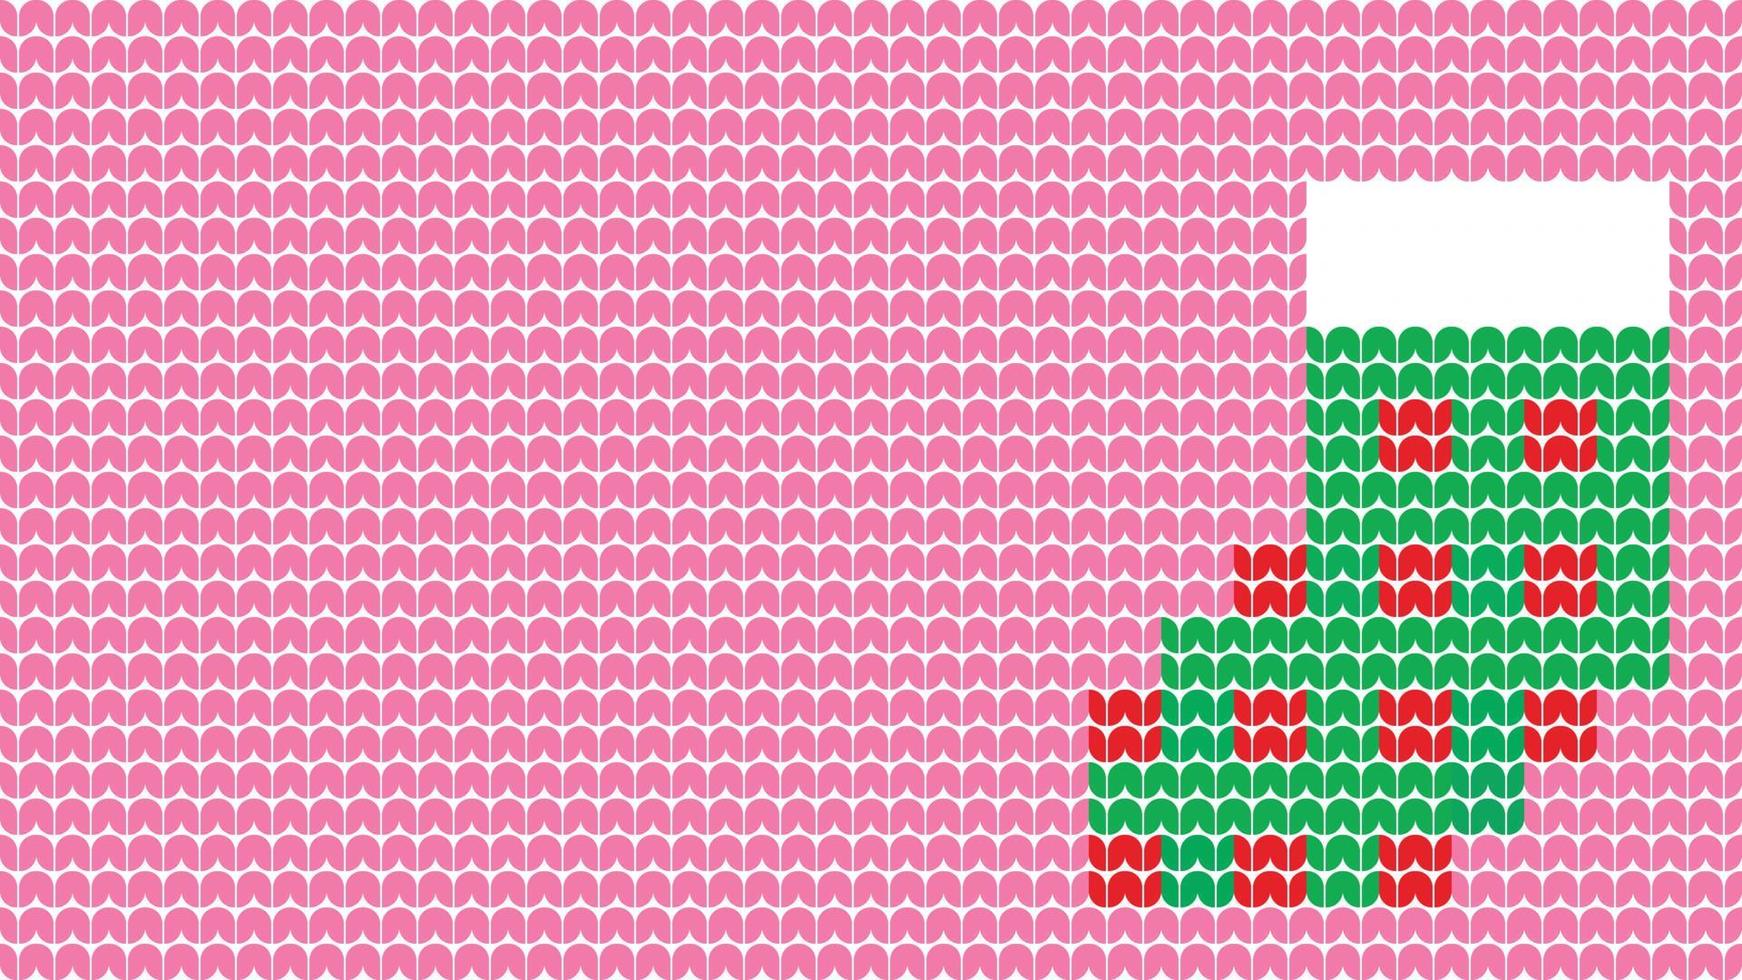 stricksocken nahtlose mustergrenze auf rosa hintergrund, stricksocken ethnische mustergrenze frohe weihnachten und glückliche wintertage vektorplakat vektor